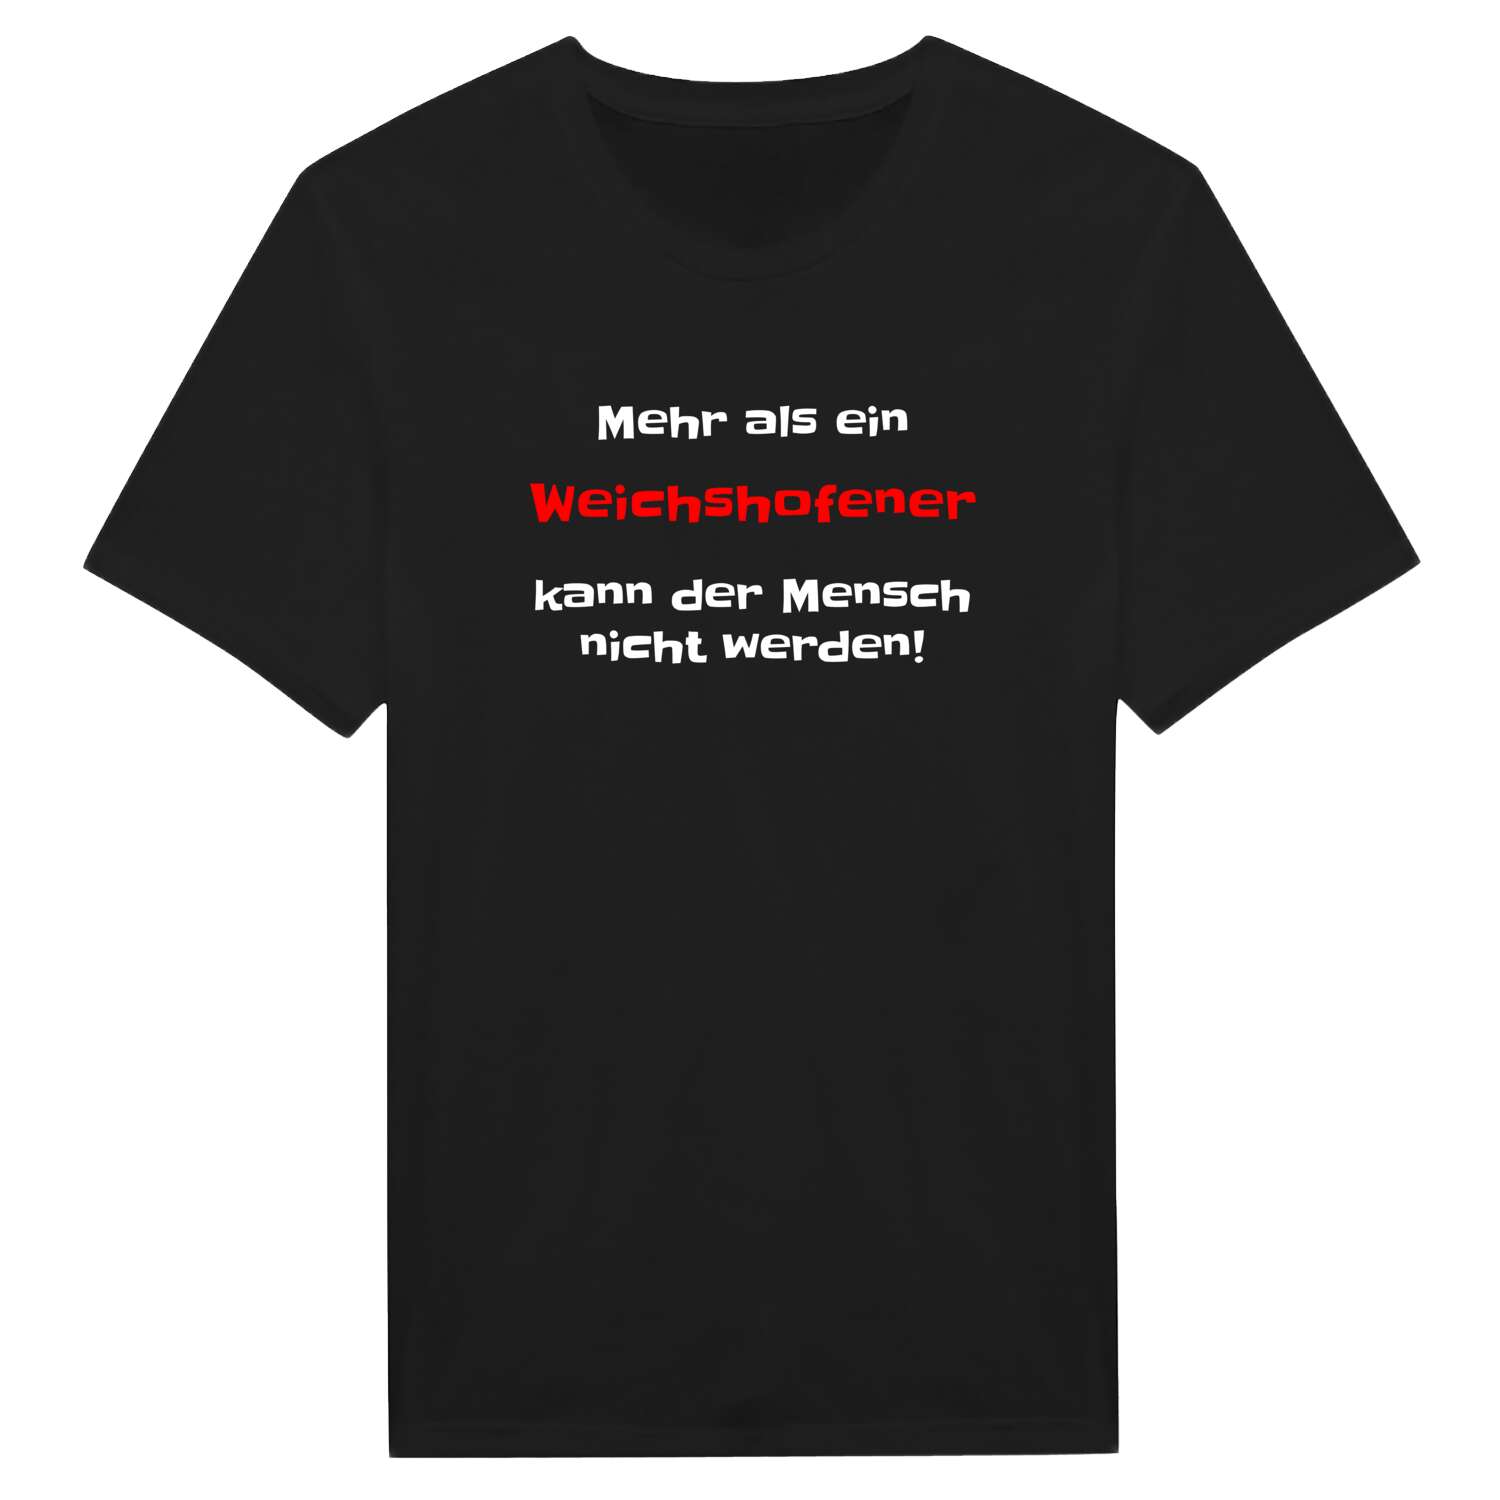 Weichshofen T-Shirt »Mehr als ein«